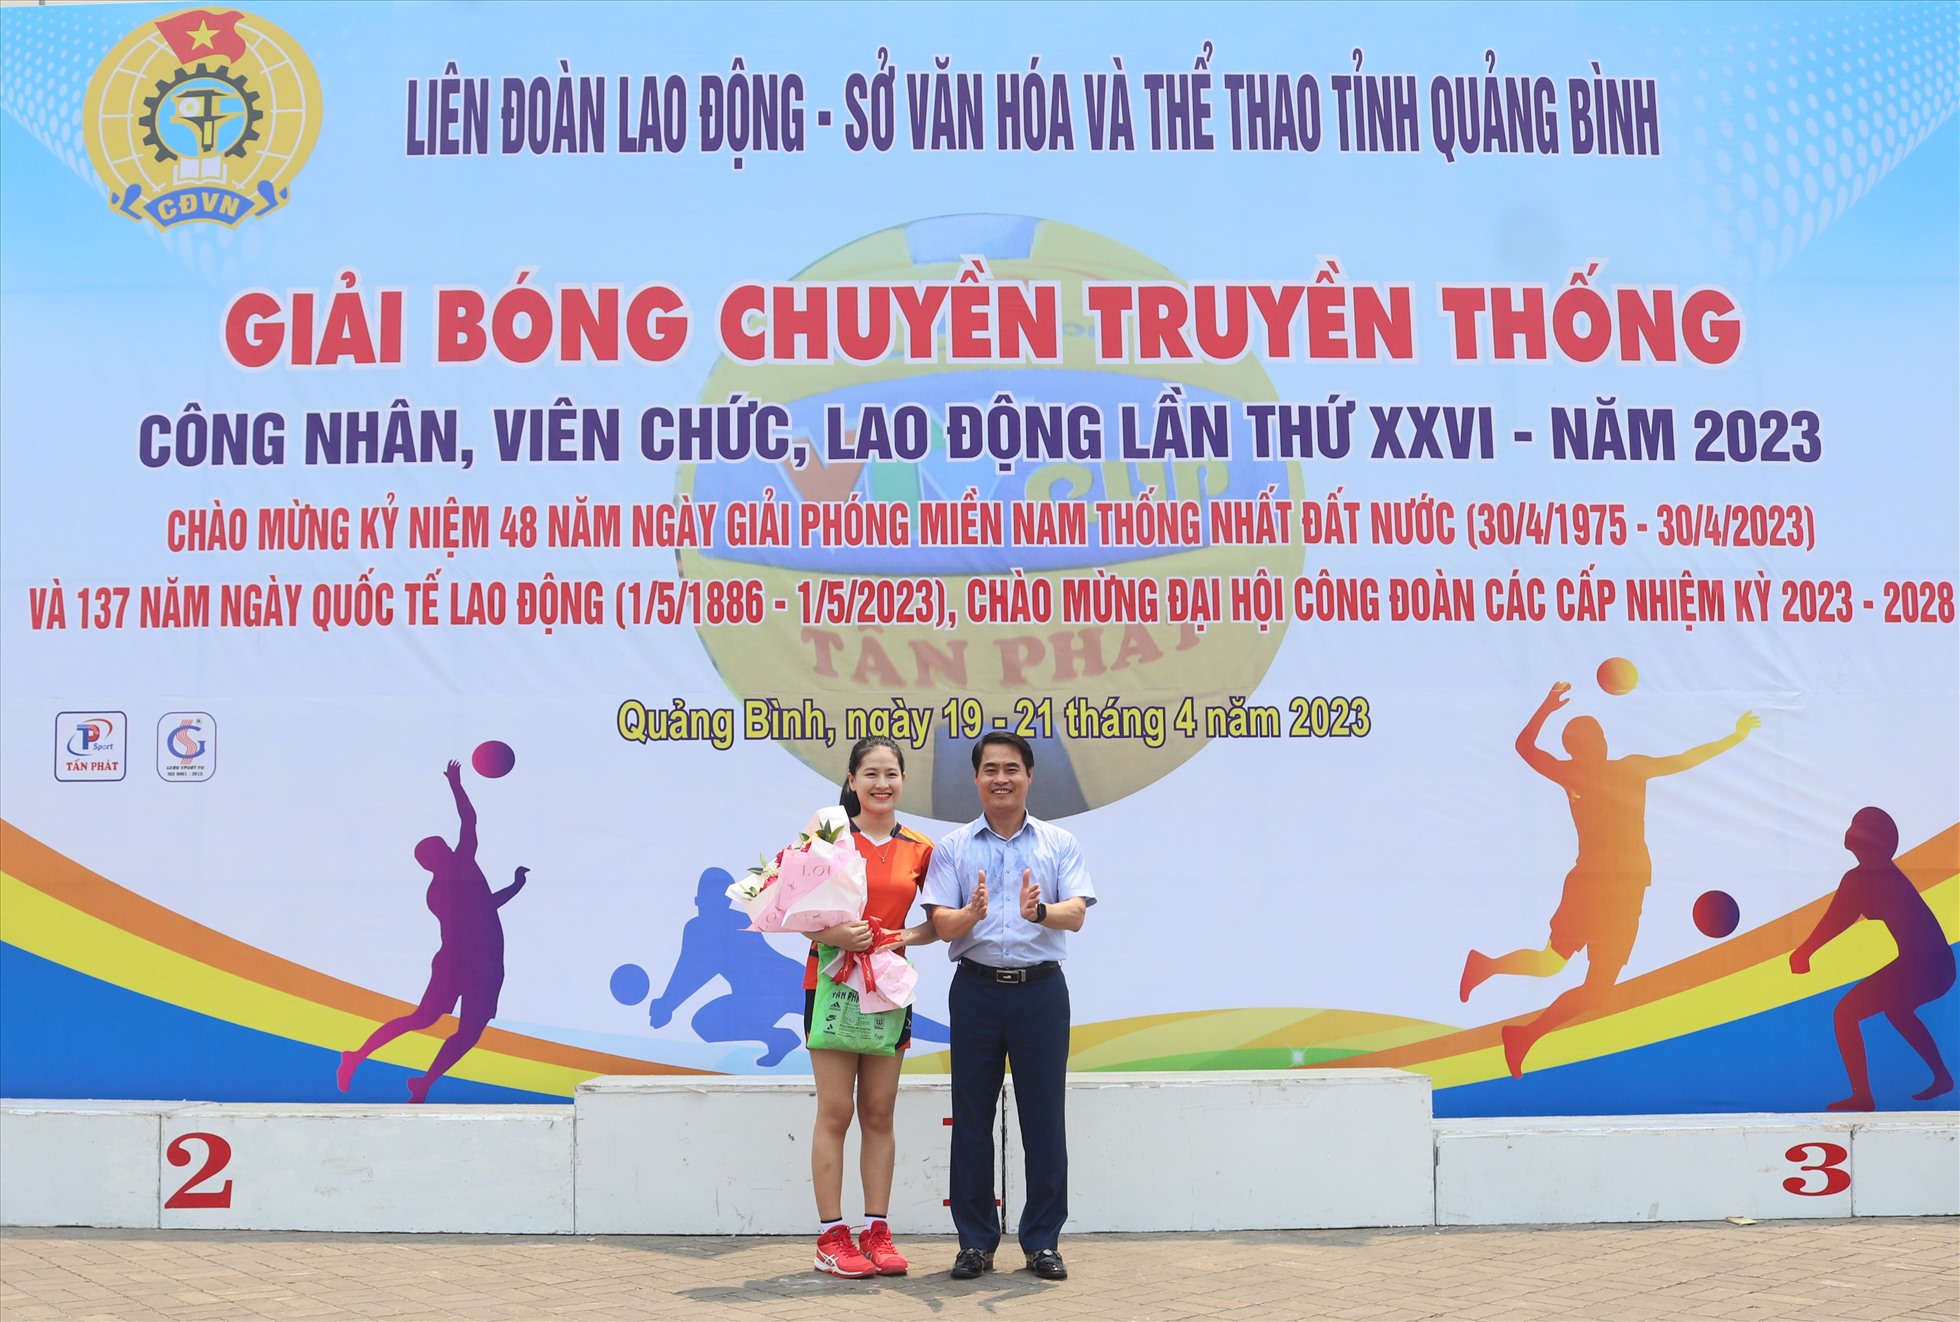 Ban tổ chức còn trao giải hoa khôi cho VĐV Nguyễn Thị Diệu Hằng. Ảnh: Xuân Hạnh